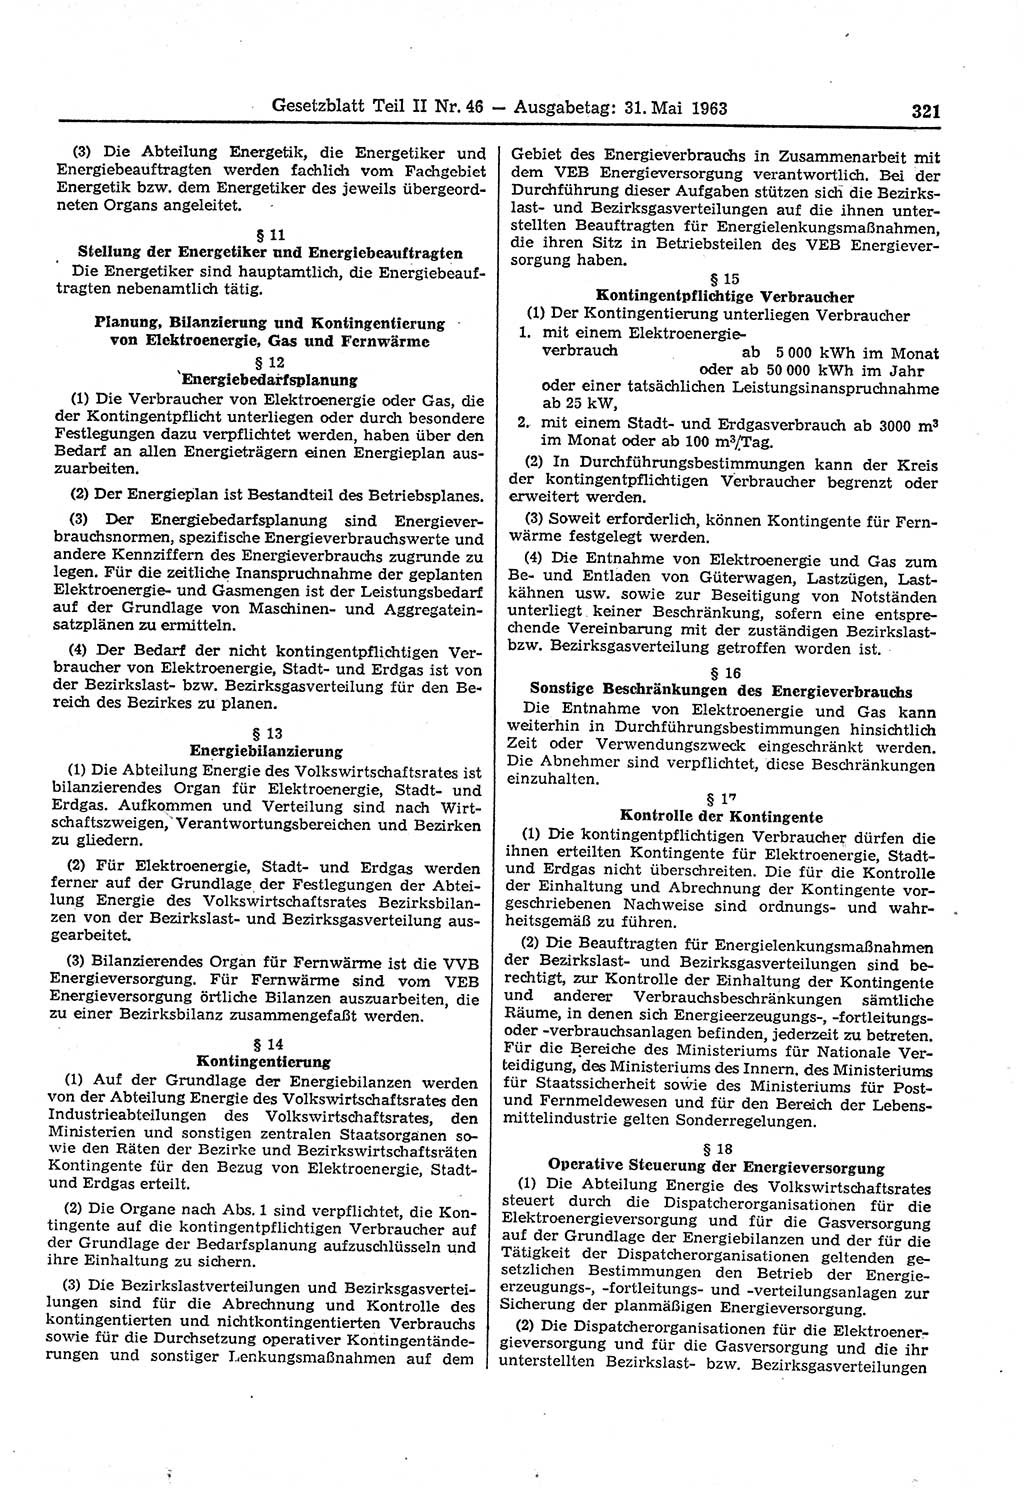 Gesetzblatt (GBl.) der Deutschen Demokratischen Republik (DDR) Teil ⅠⅠ 1963, Seite 321 (GBl. DDR ⅠⅠ 1963, S. 321)